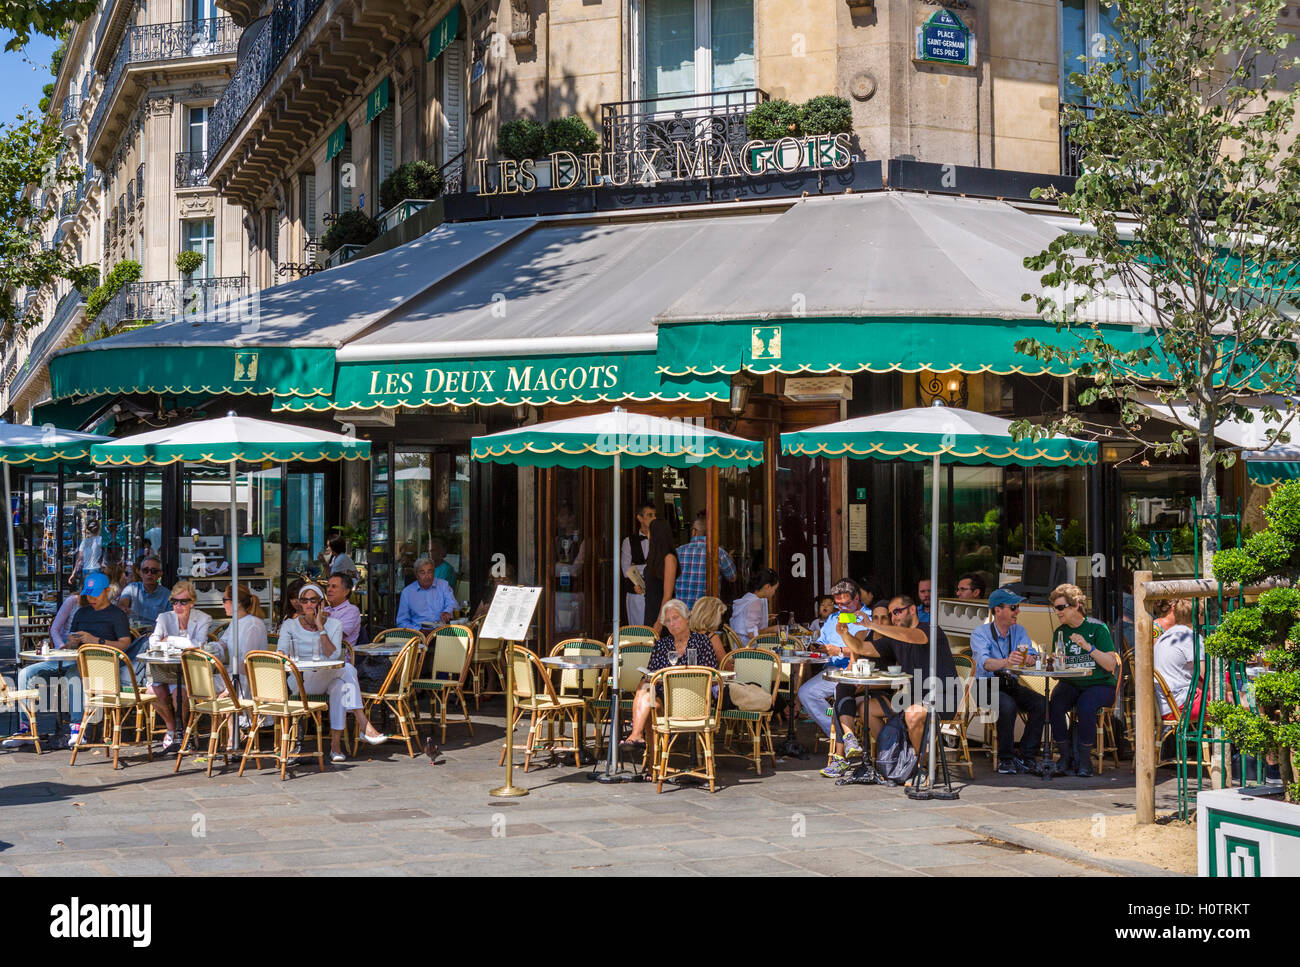 Die berühmten Les Deux Magots Café, Place Saint-Germain-des-Prés, Paris, Frankreich Stockfoto